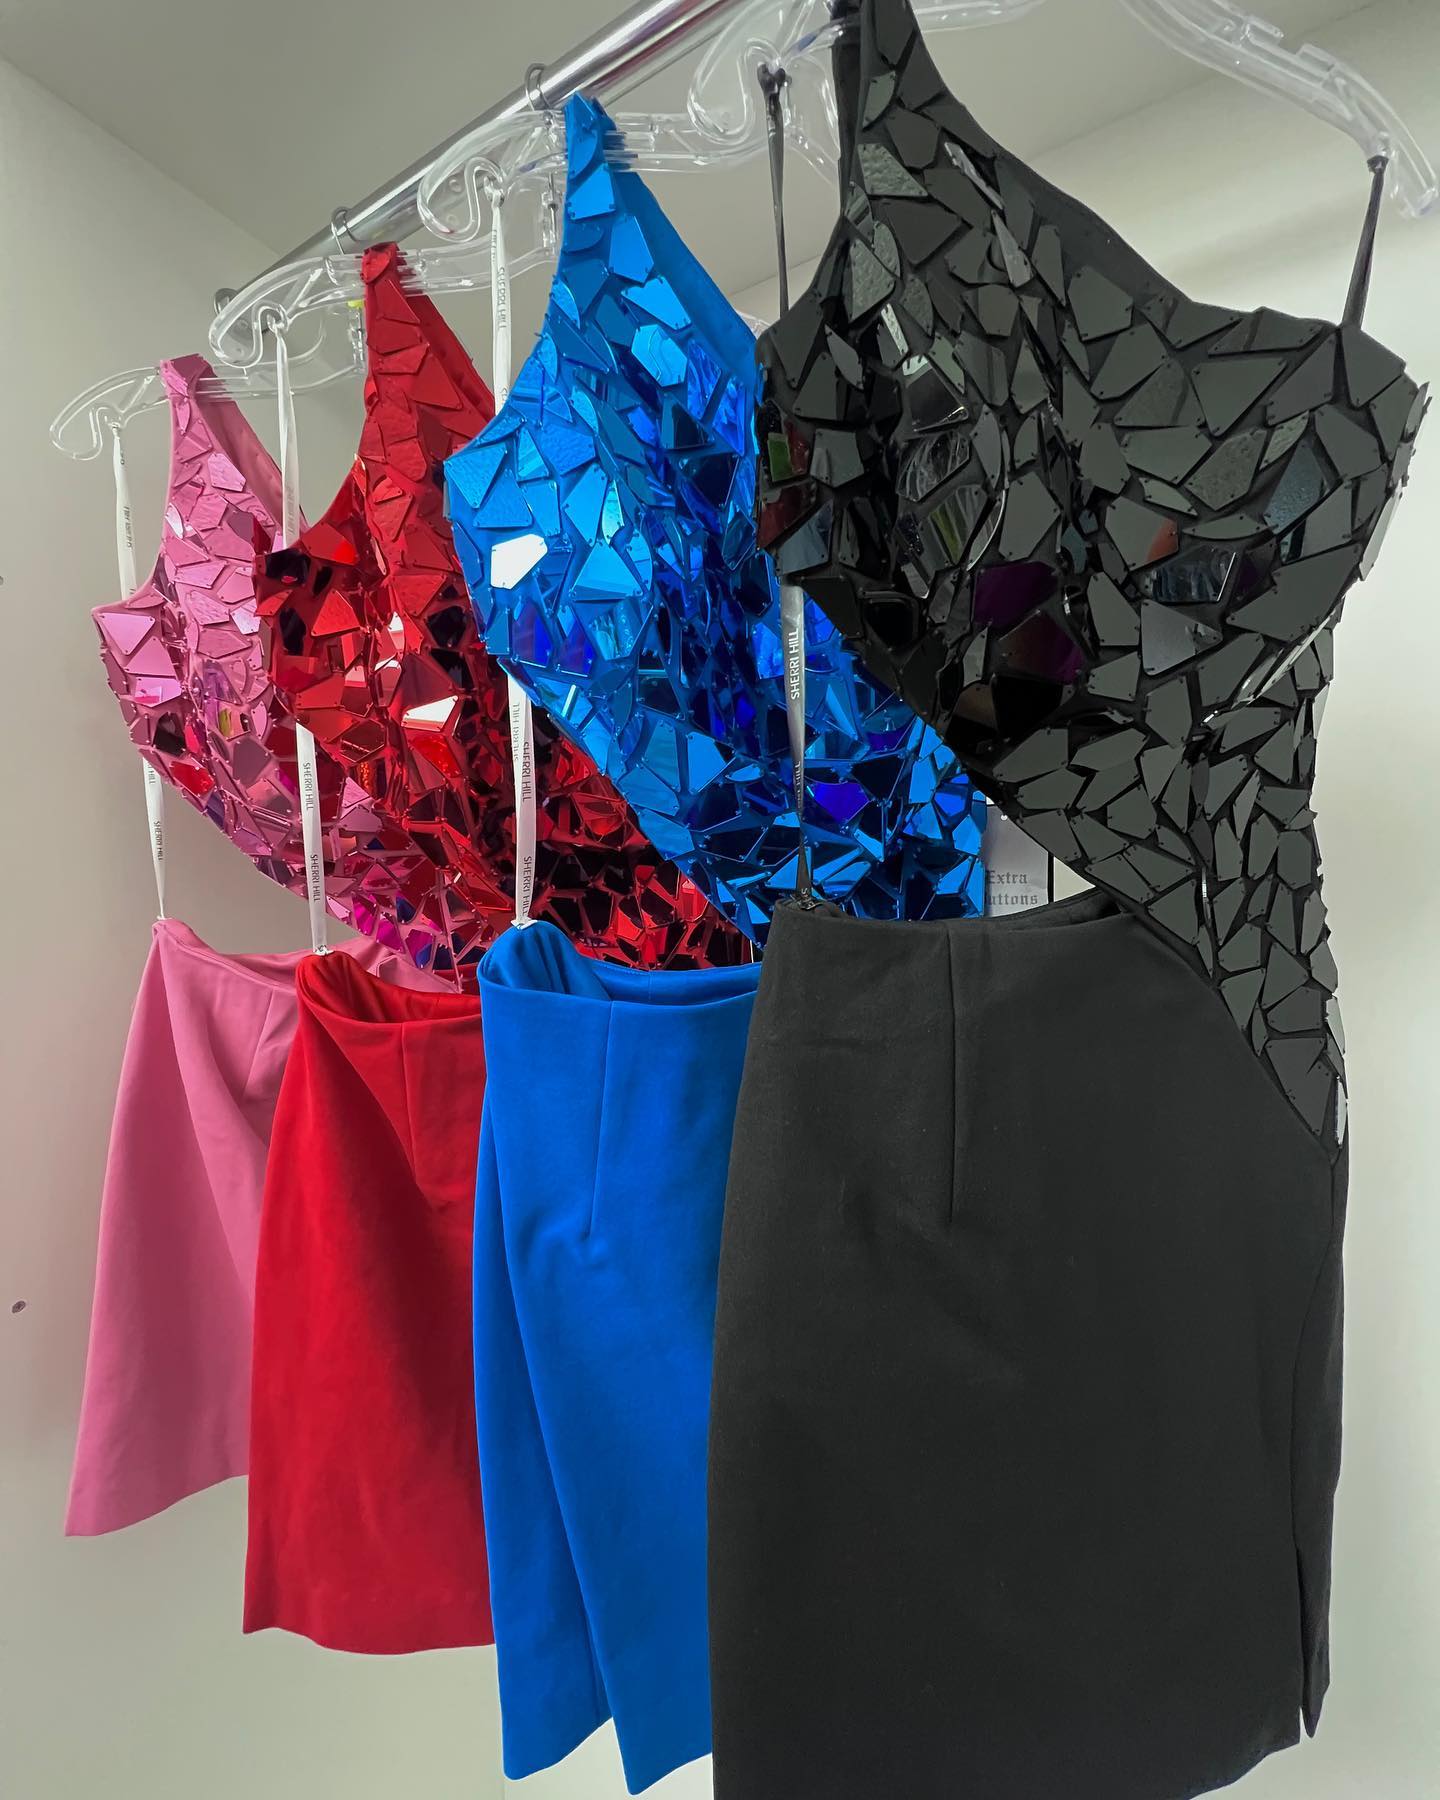 Spiegel-Hoco-Kleid 2023, Glasausschnitt, für formelle Anlässe, Cocktailparty, Heimkehr, Festzug, kurzes Abschlussball-Tanzkleid, schwarze Pfauen, rosa, roter Mantel, einschulterig, 2k23, geteilt